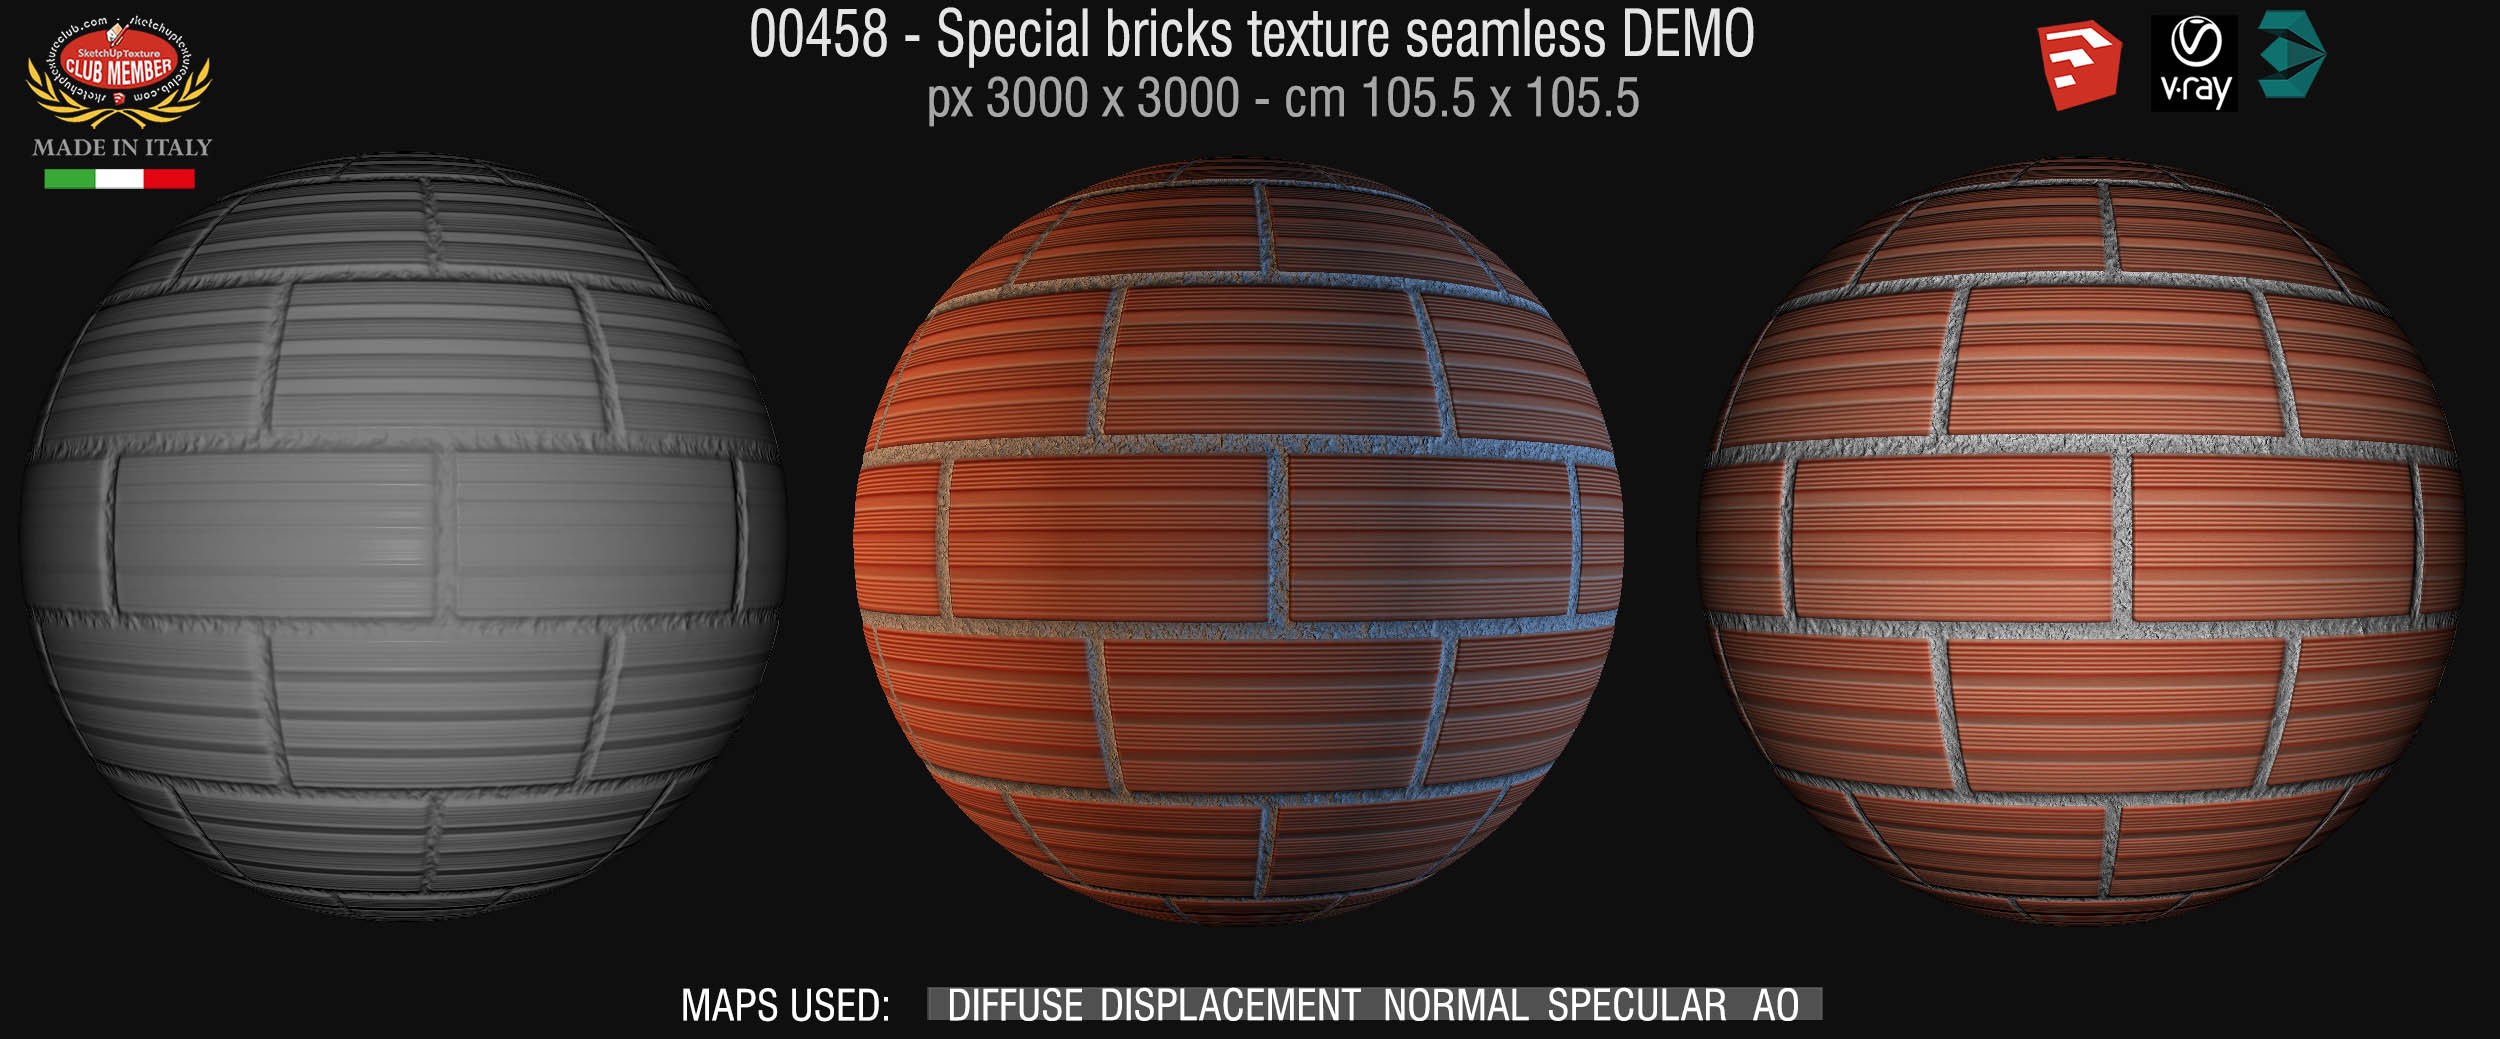 00458 Special bricks texture seamless + maps DEMO